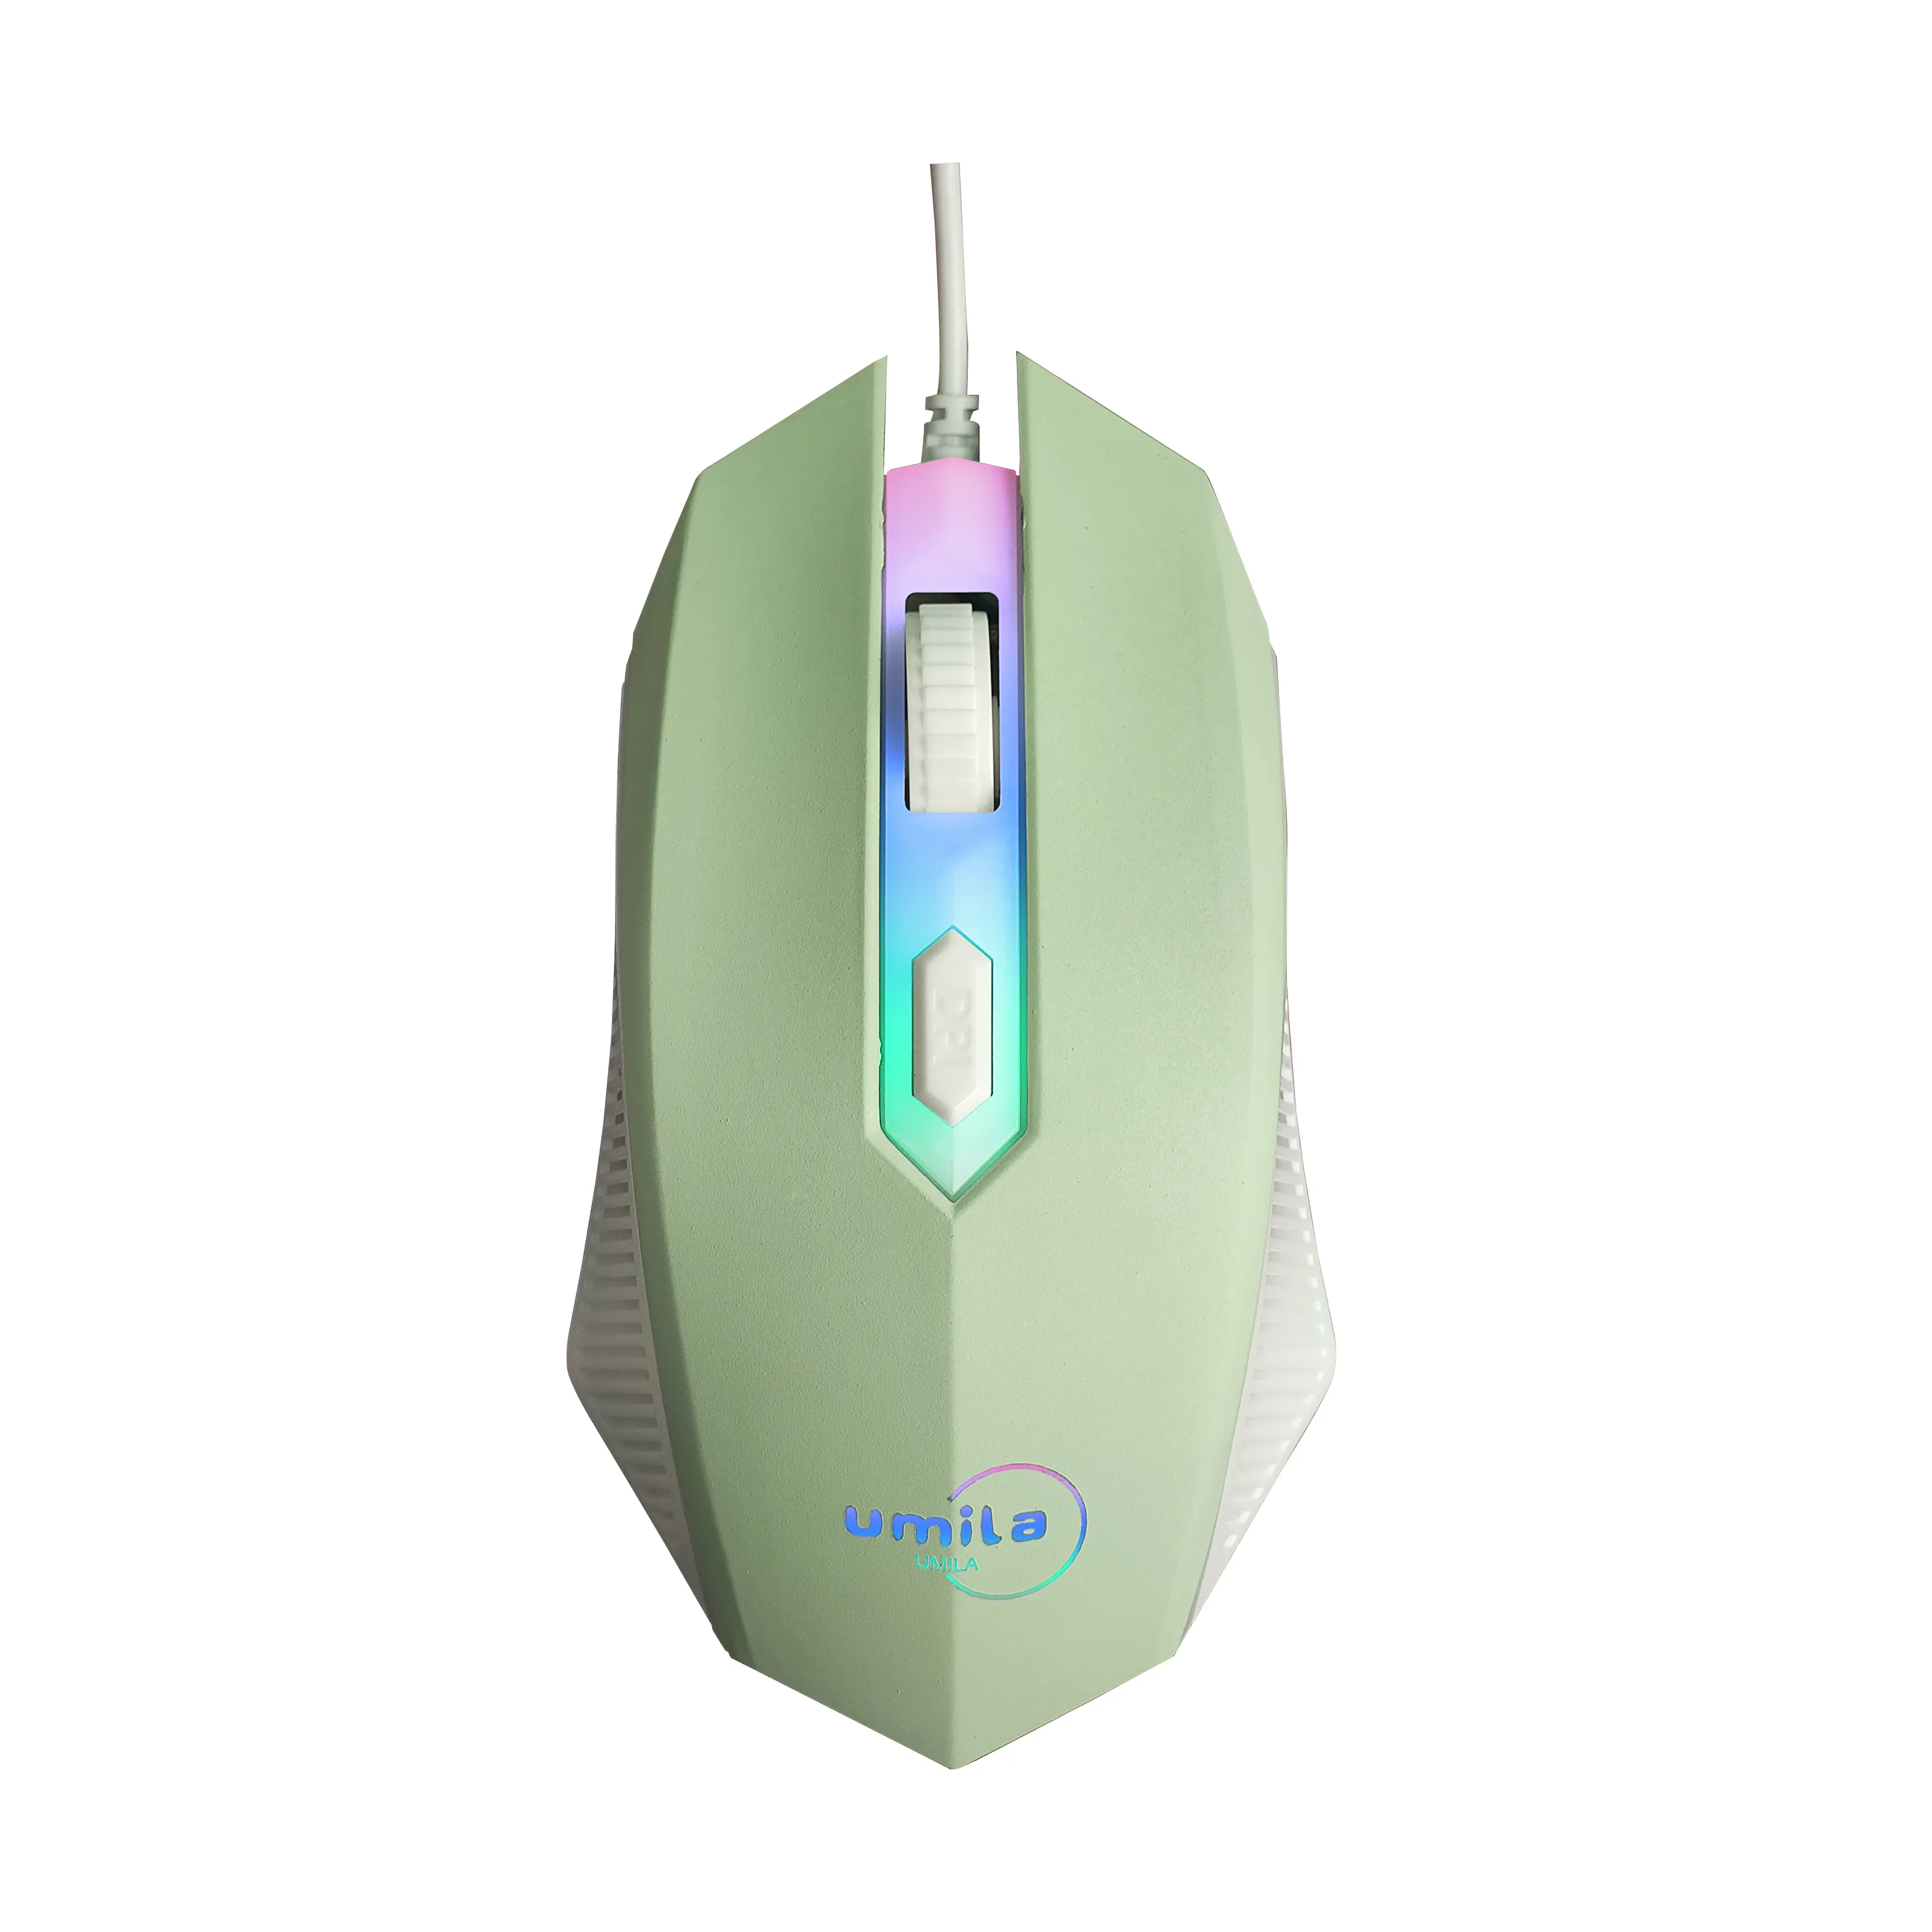 Mouse para jogos com sensor óptico de 2400 DPI - 4 botões, mouse de computador com design ergonômico para PC Windows Gamers